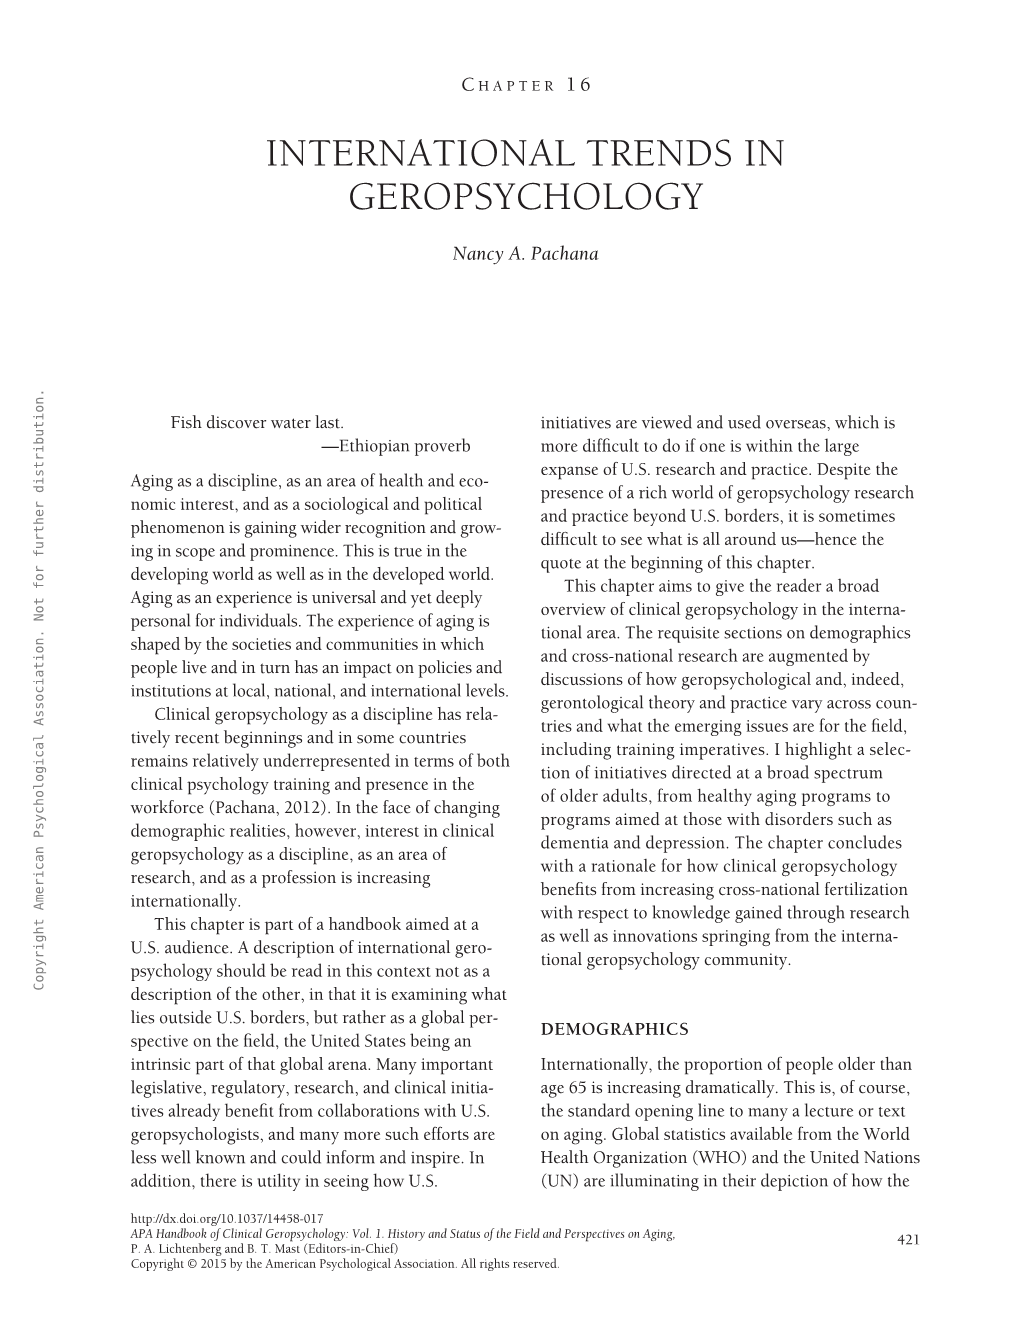 APA Handbook of Clinical Geropsychology, Vol. 1: History And